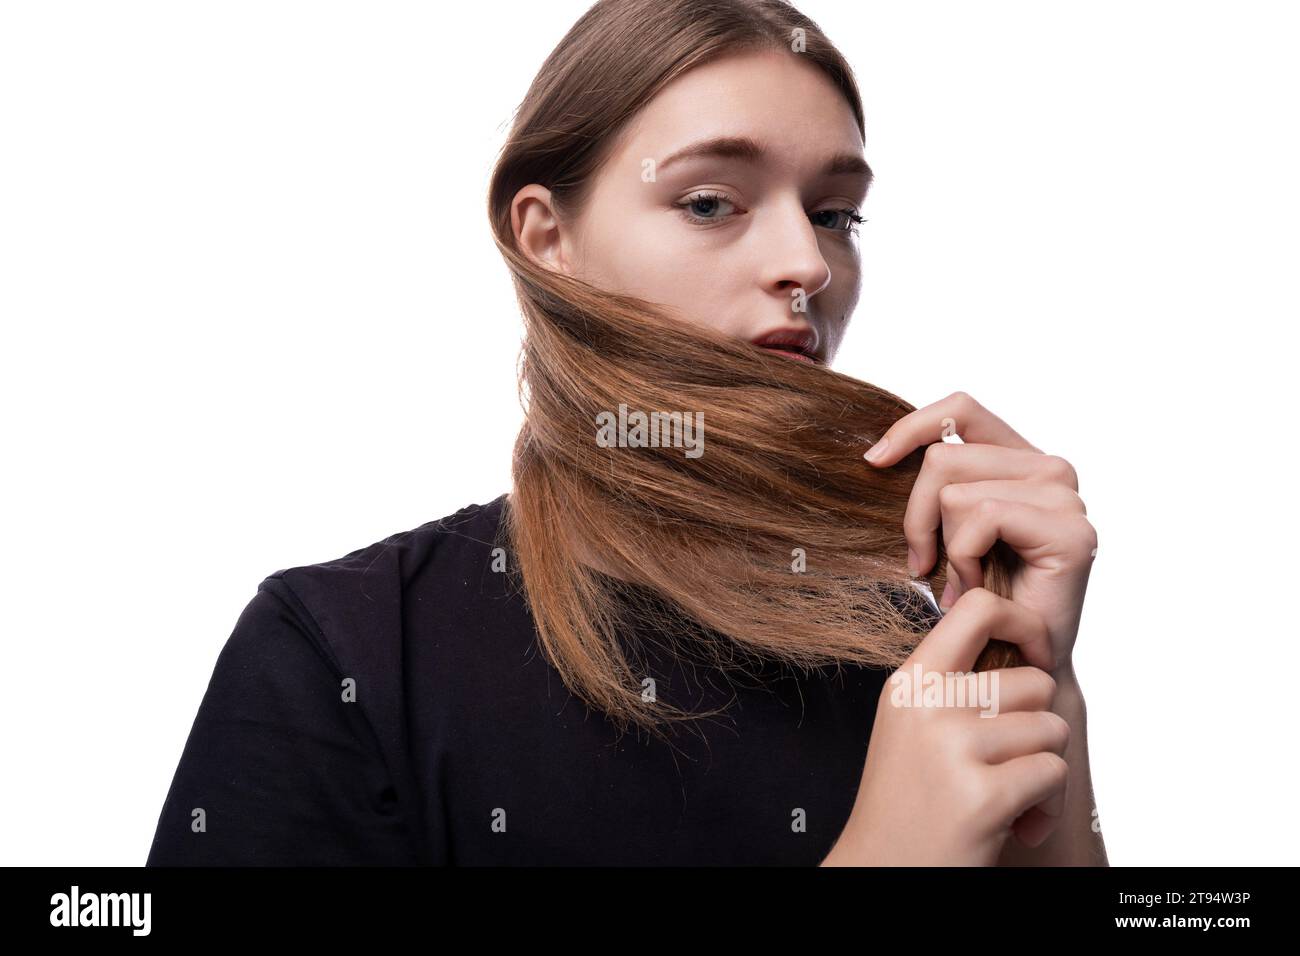 Ein hellhaariges Teenager-Mädchen in einem schwarzen T-Shirt berührt ihr seidiges Haar Stockfoto